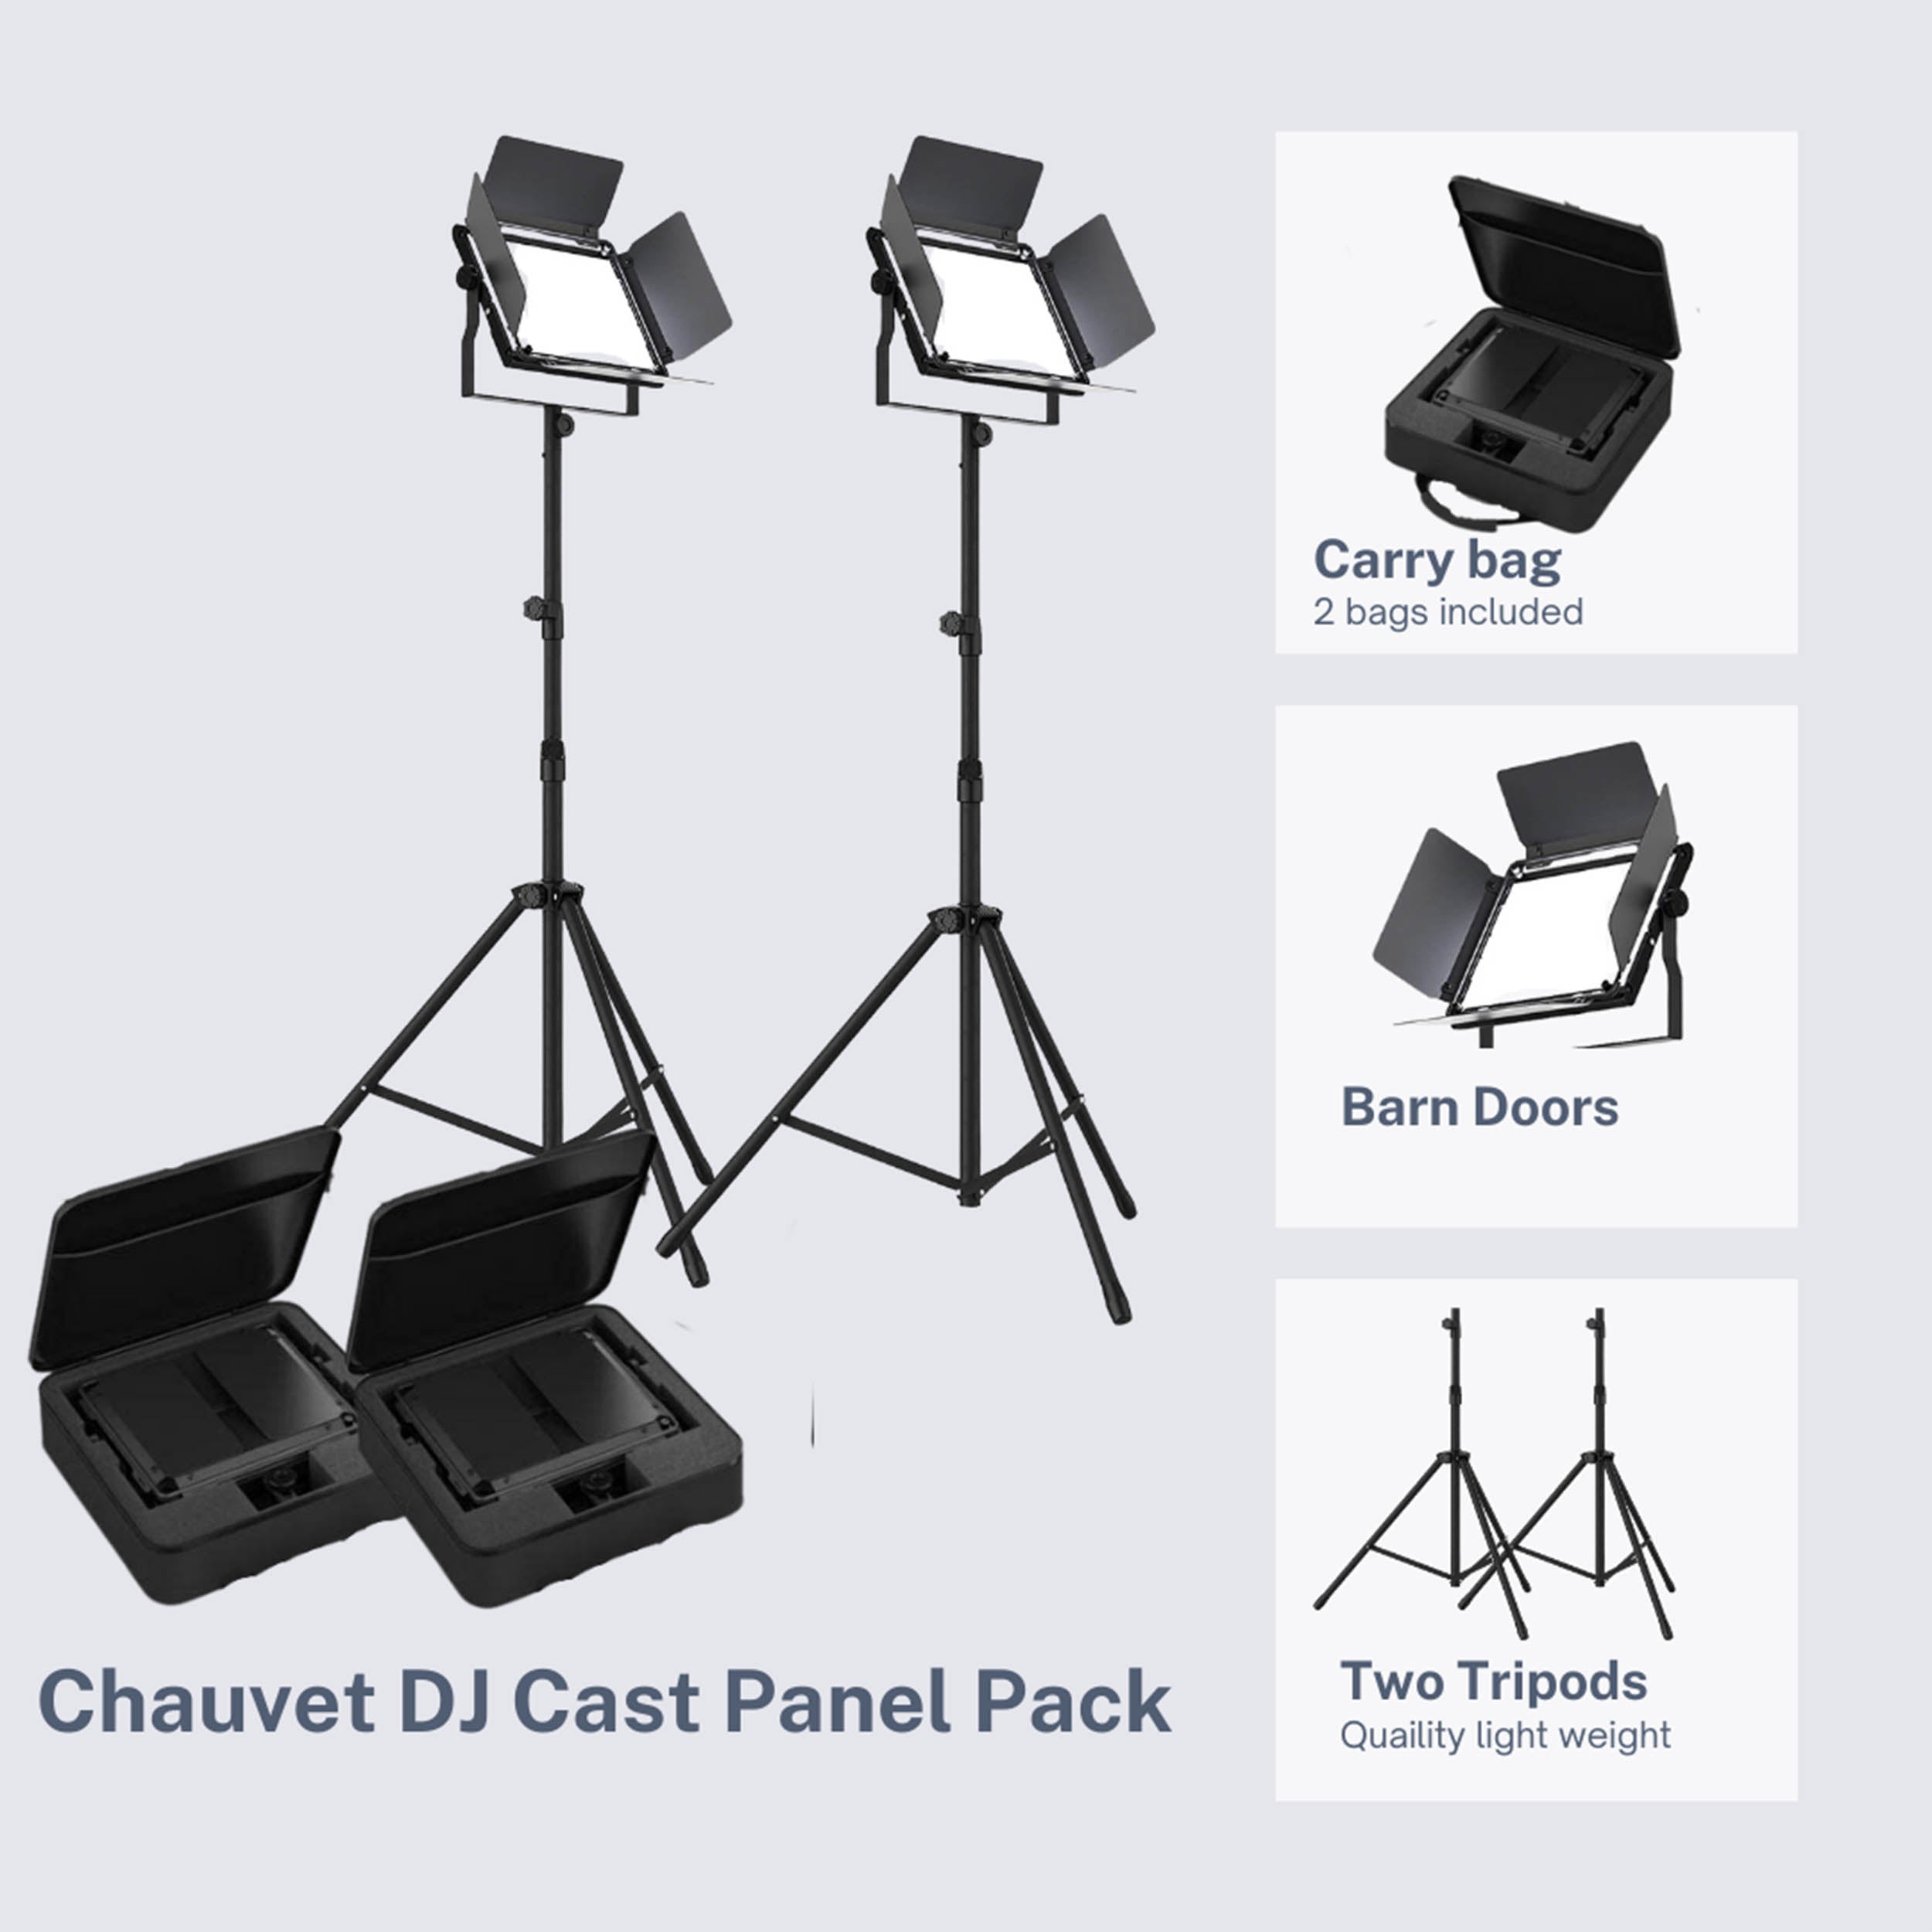 Chauvet DJ Cast Panel Pack, Complete Lighting Solution for Vlogging